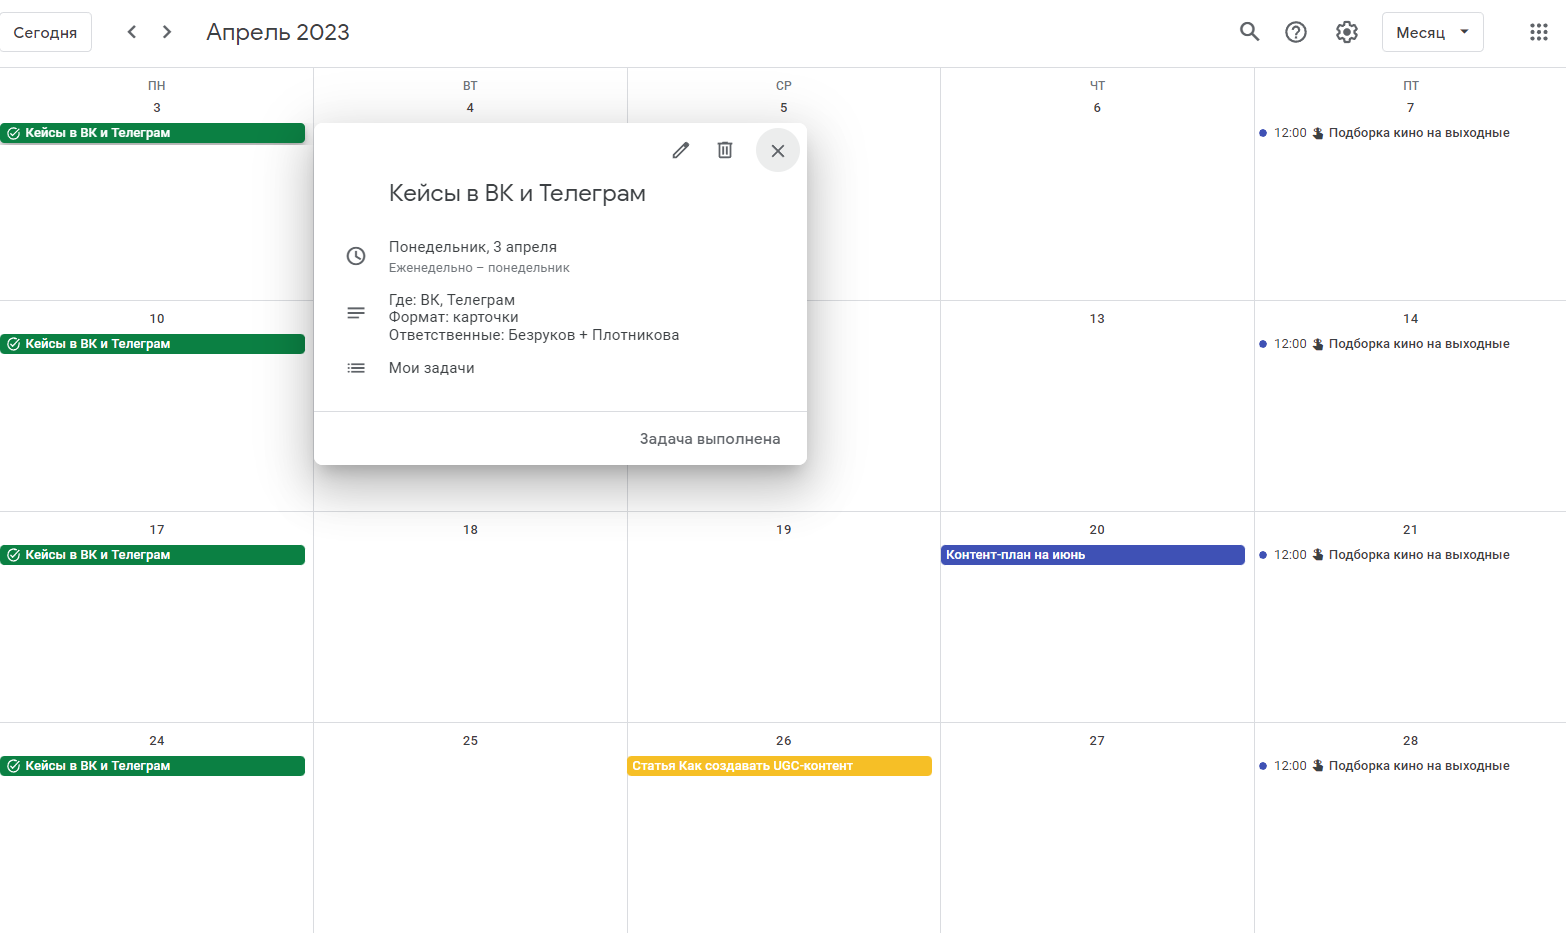 Пример контент-плана в онлайн-календаре